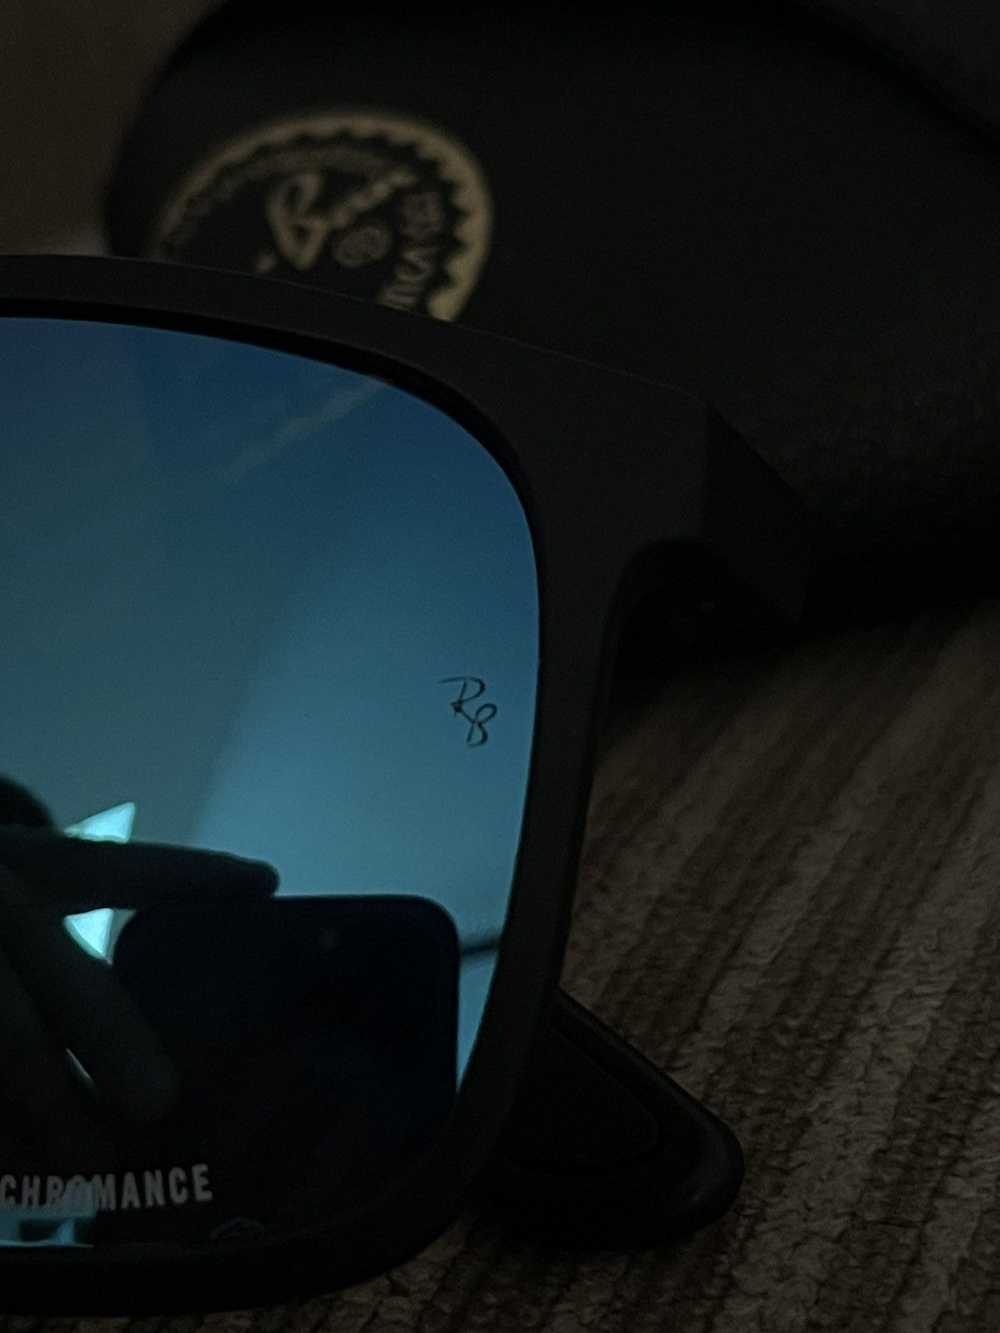 RayBan Ray-Ban P Sunglasses - image 3